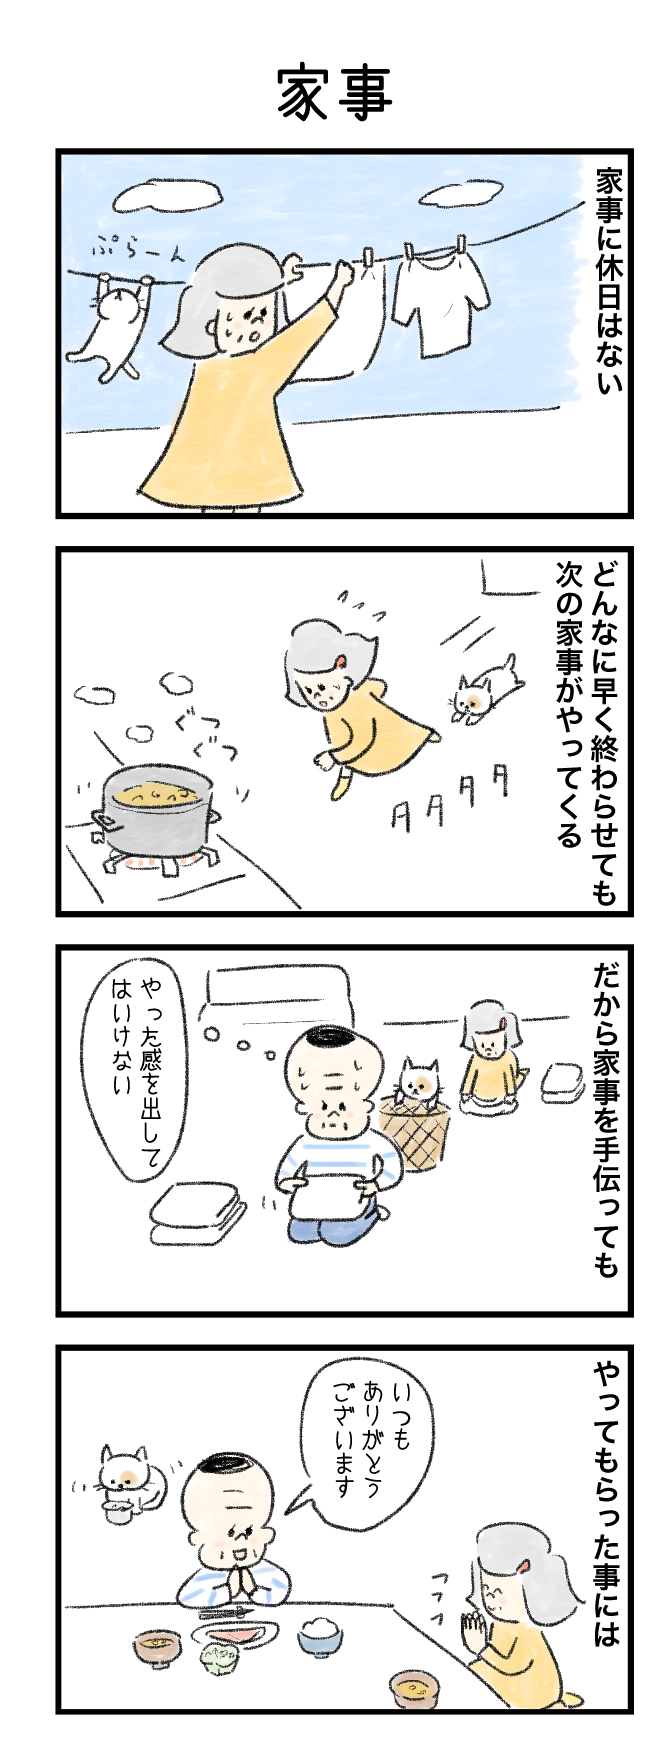 今日の泉谷さん【24】 作：カワサキヒロシ（ごとお日漫画）